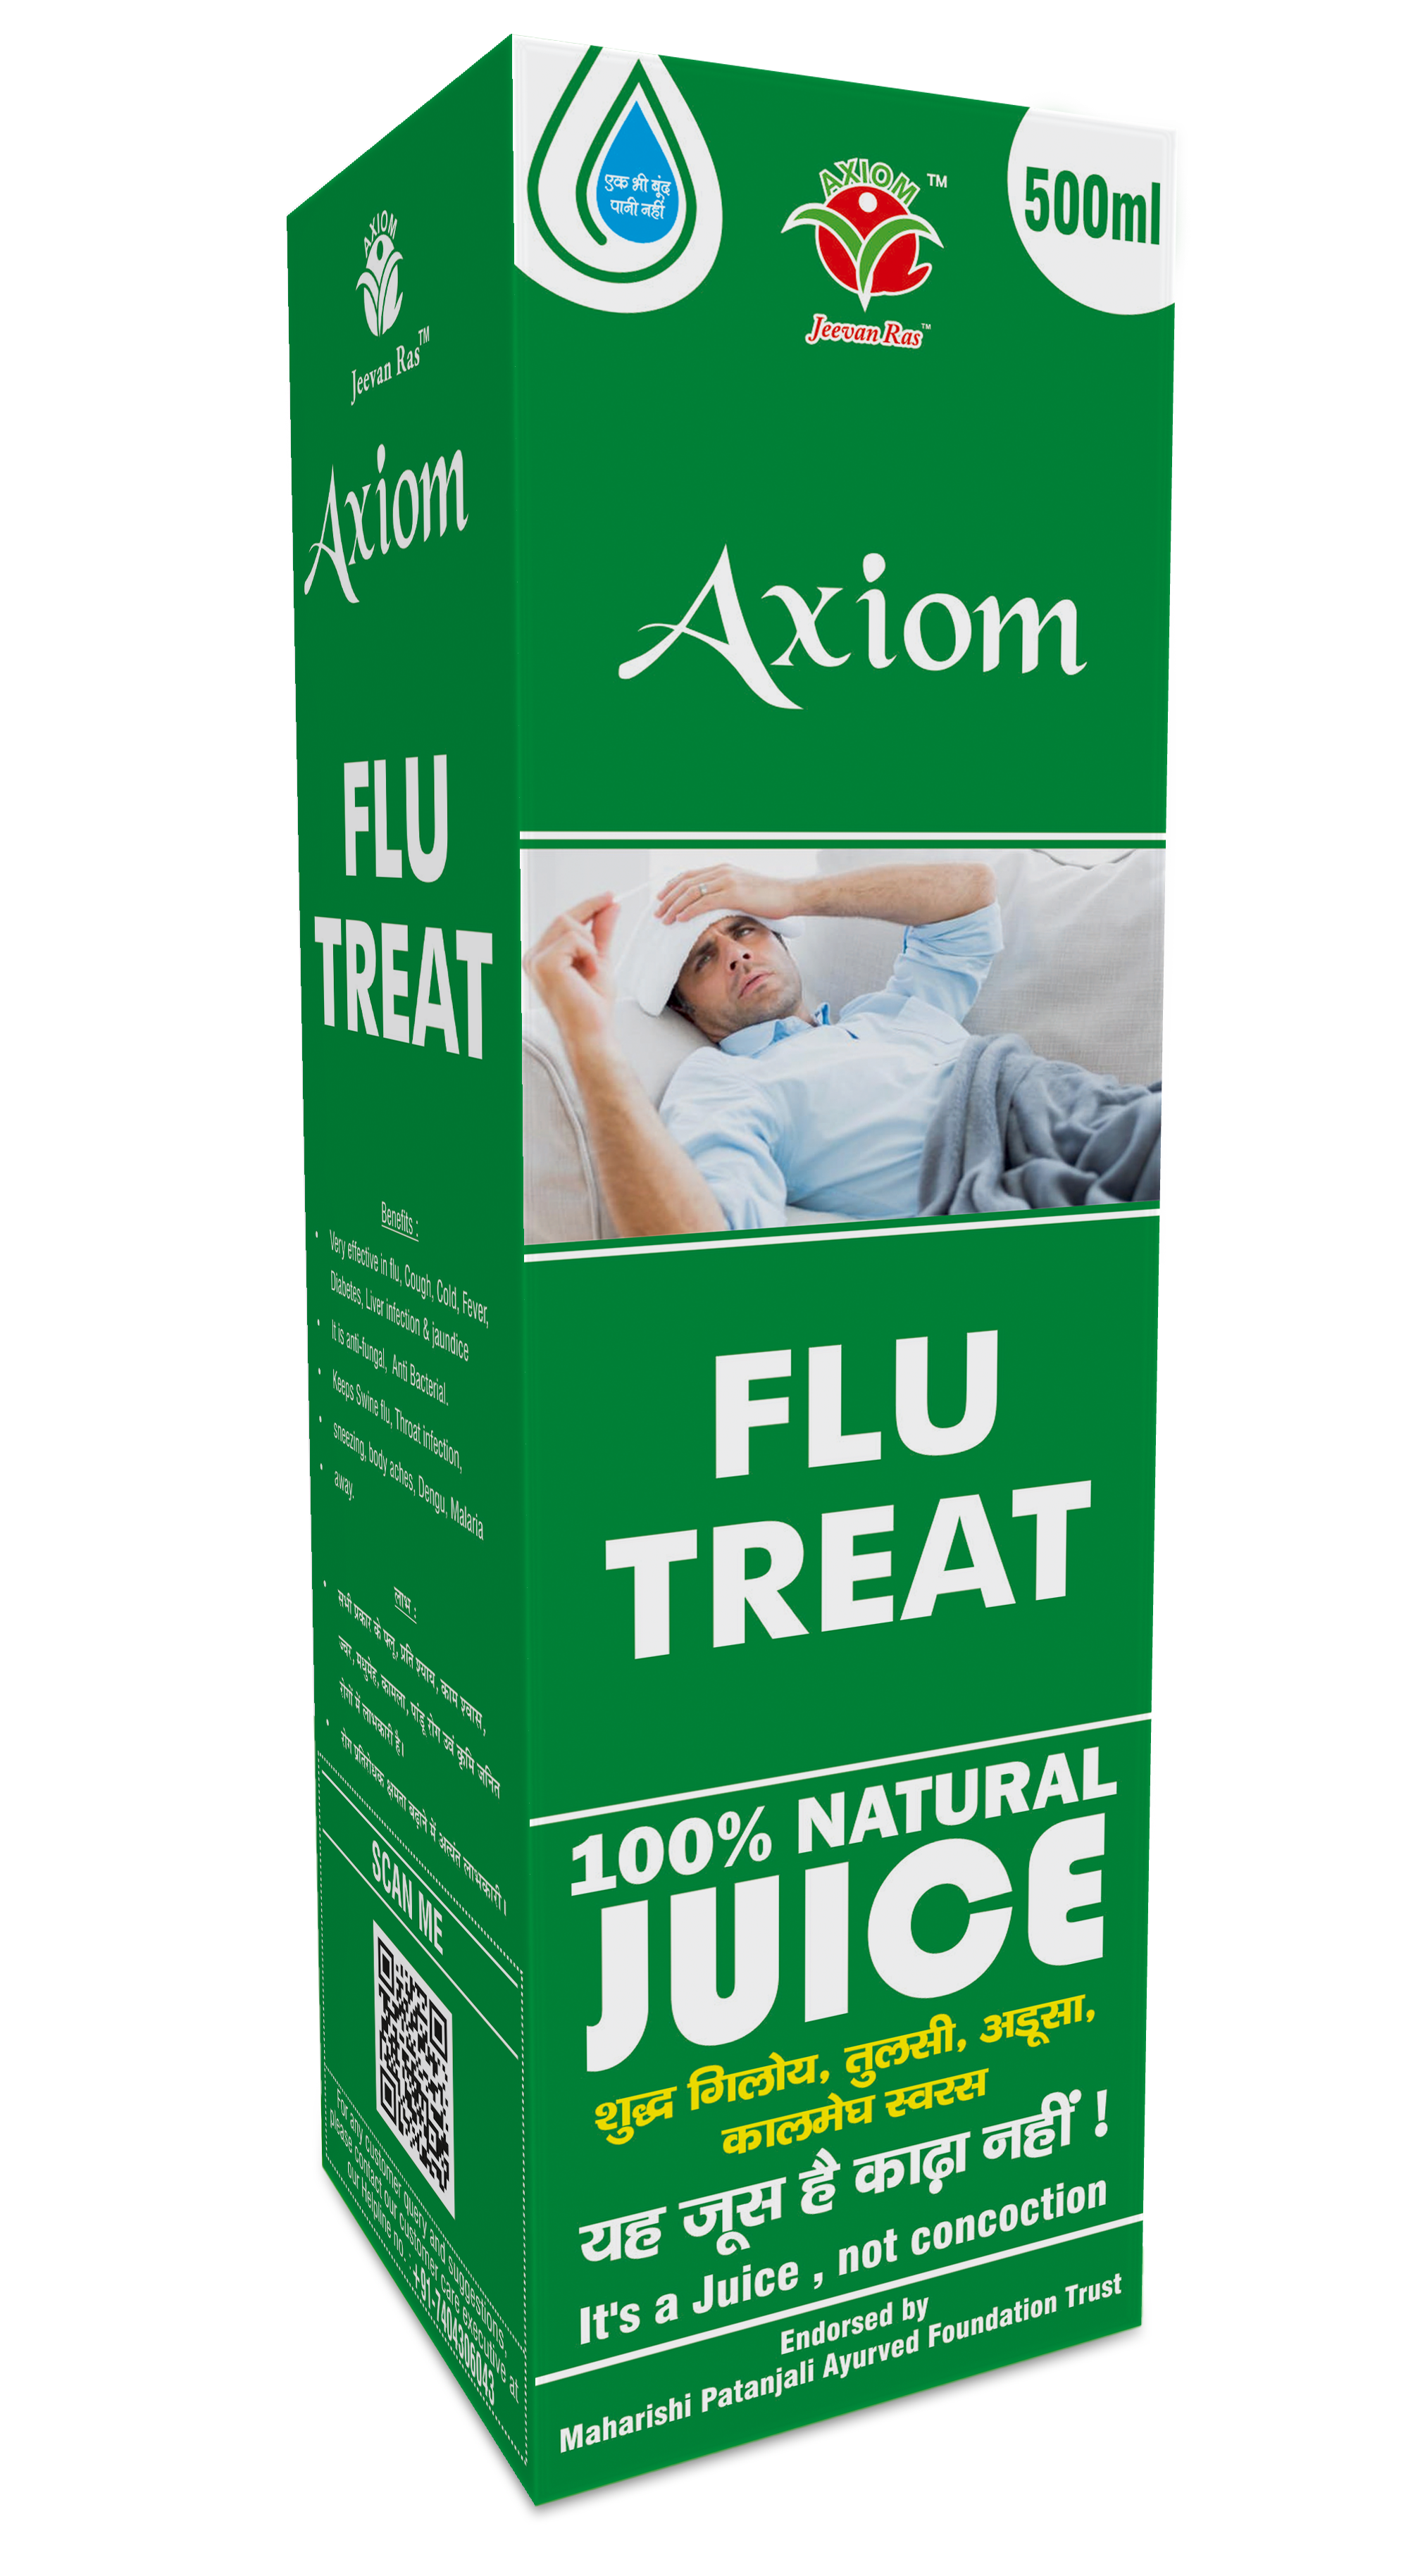 Buy Axiom Flu Treat at Best Price Online